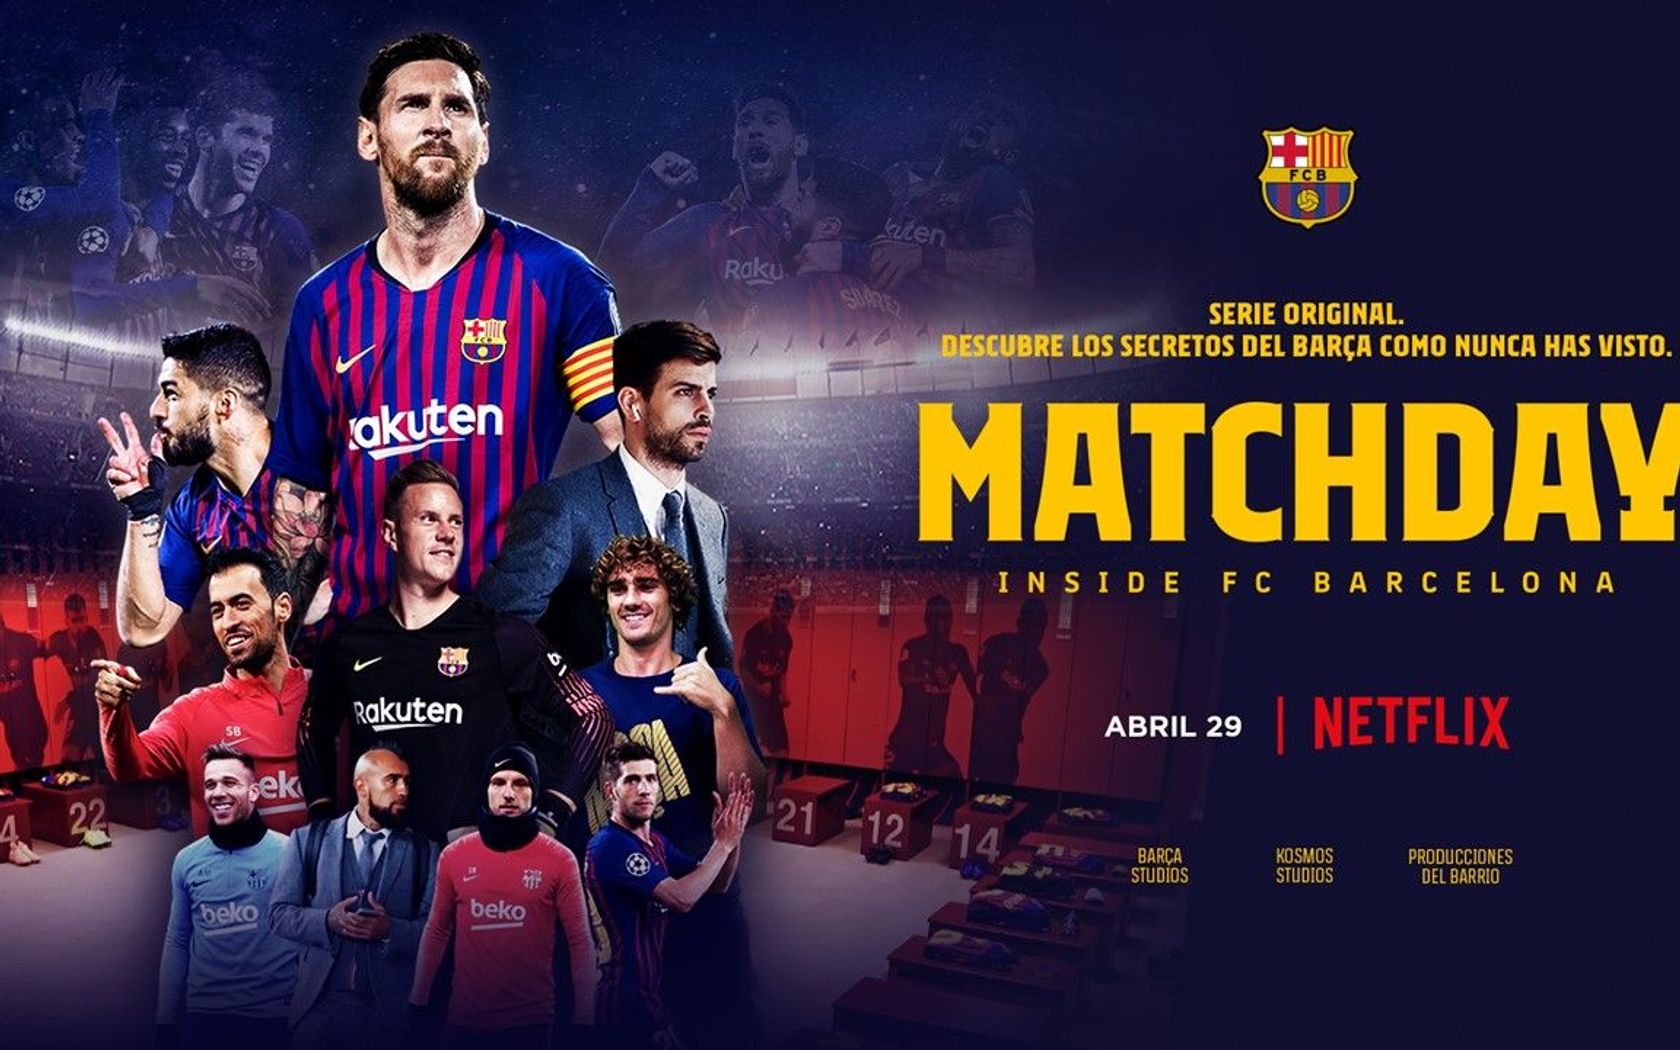 El Barça traspasa fronteras y llega a un acuerdo con Netflix